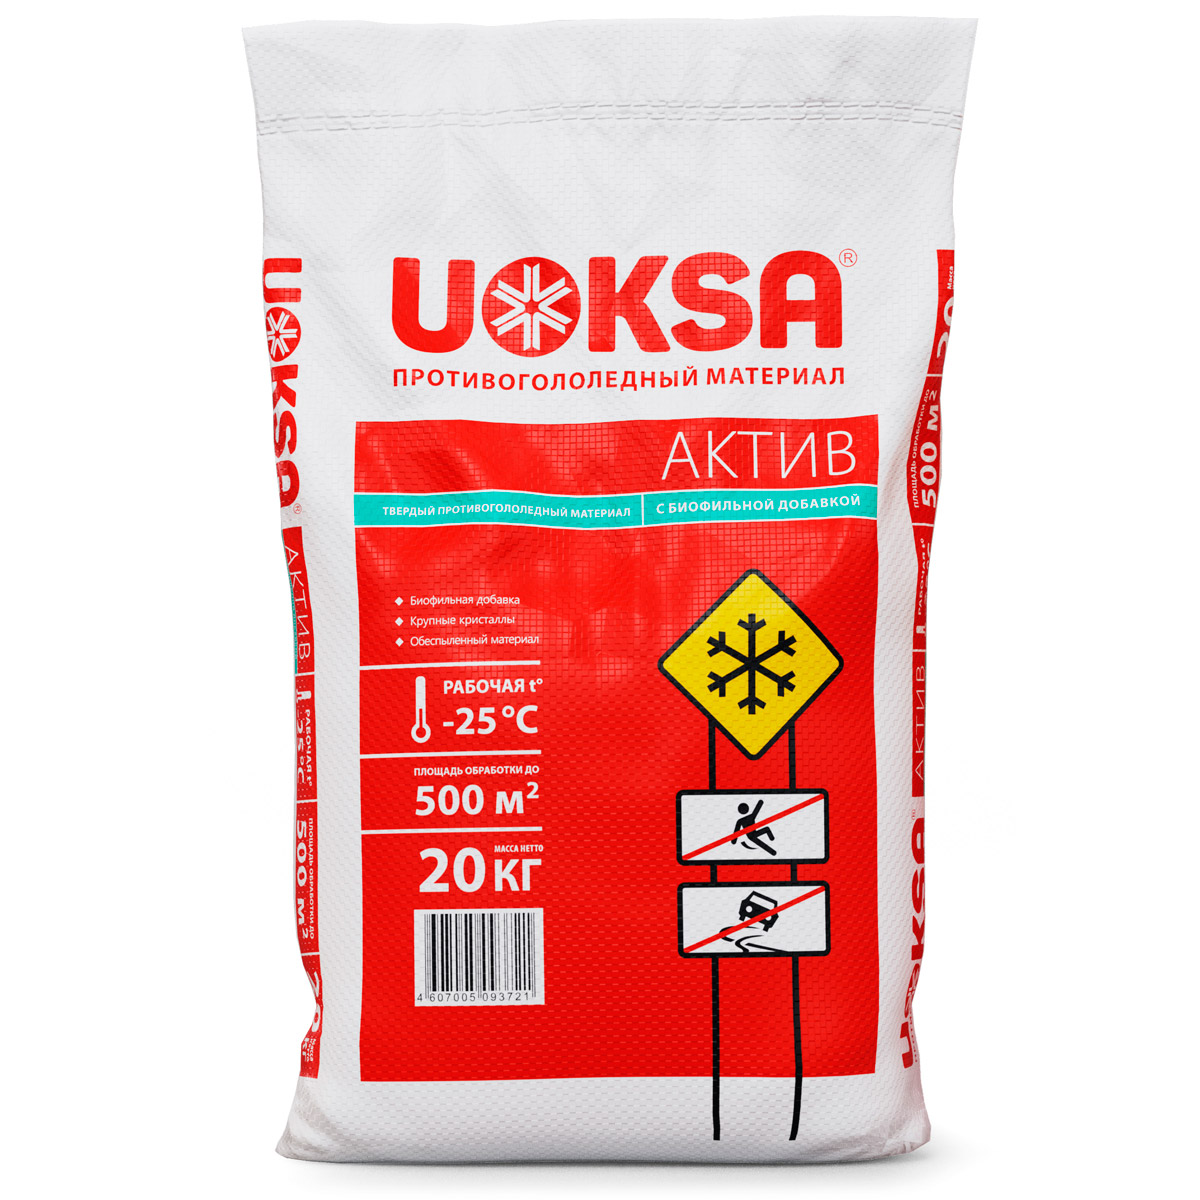 Песчано соляная смесь Ratmix. UOKSA Актив 5кг. Реагент противогололедный пескосоль -25 °с 50 кг в Леруа Мерлен. UOKSA Кристал (до -15с), 20 кг. Актив 25 лет